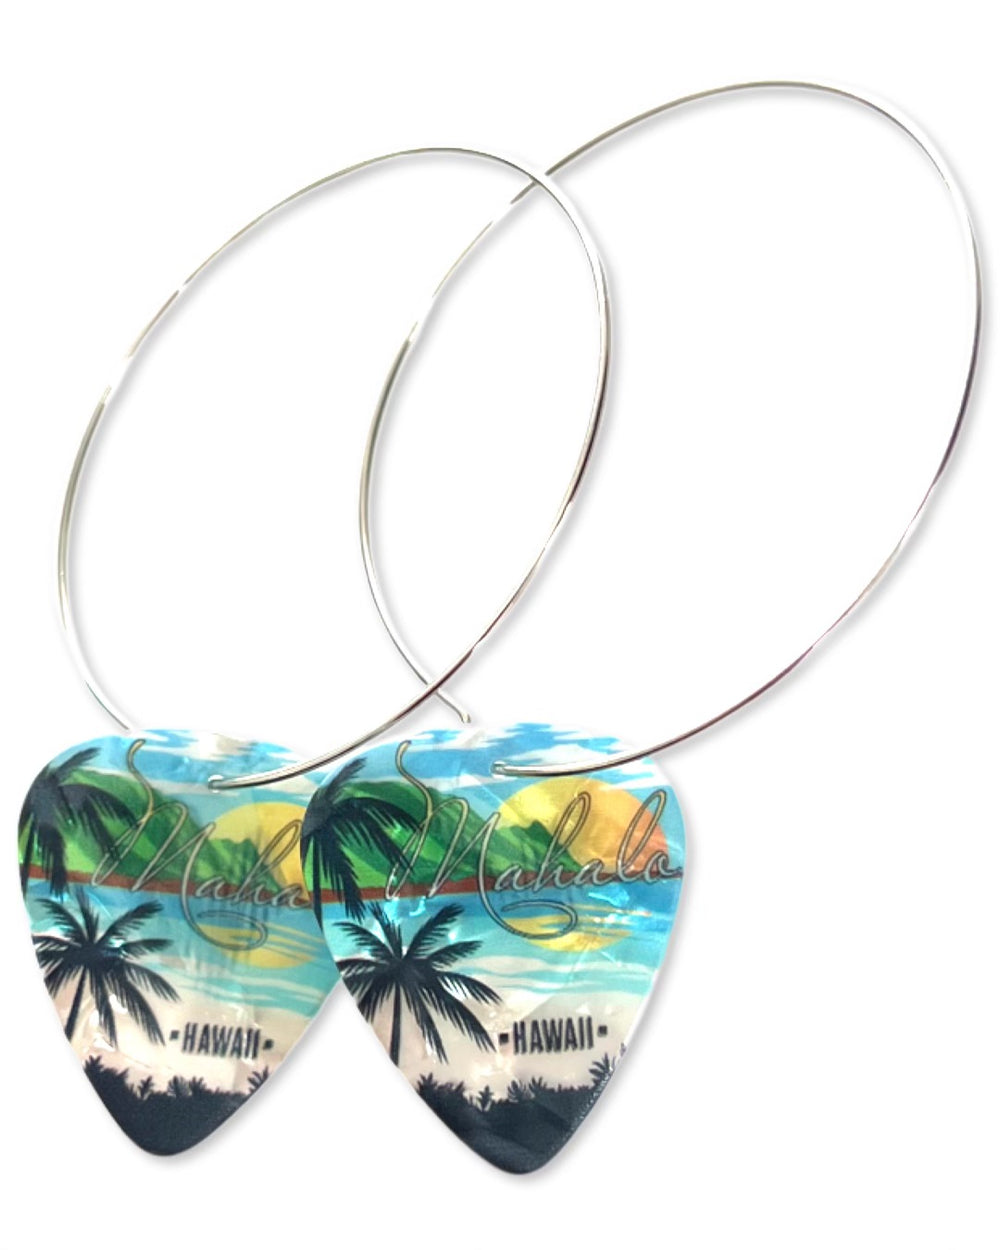 Mahalo Hawaii Beach Single Guitar Pick Earrings